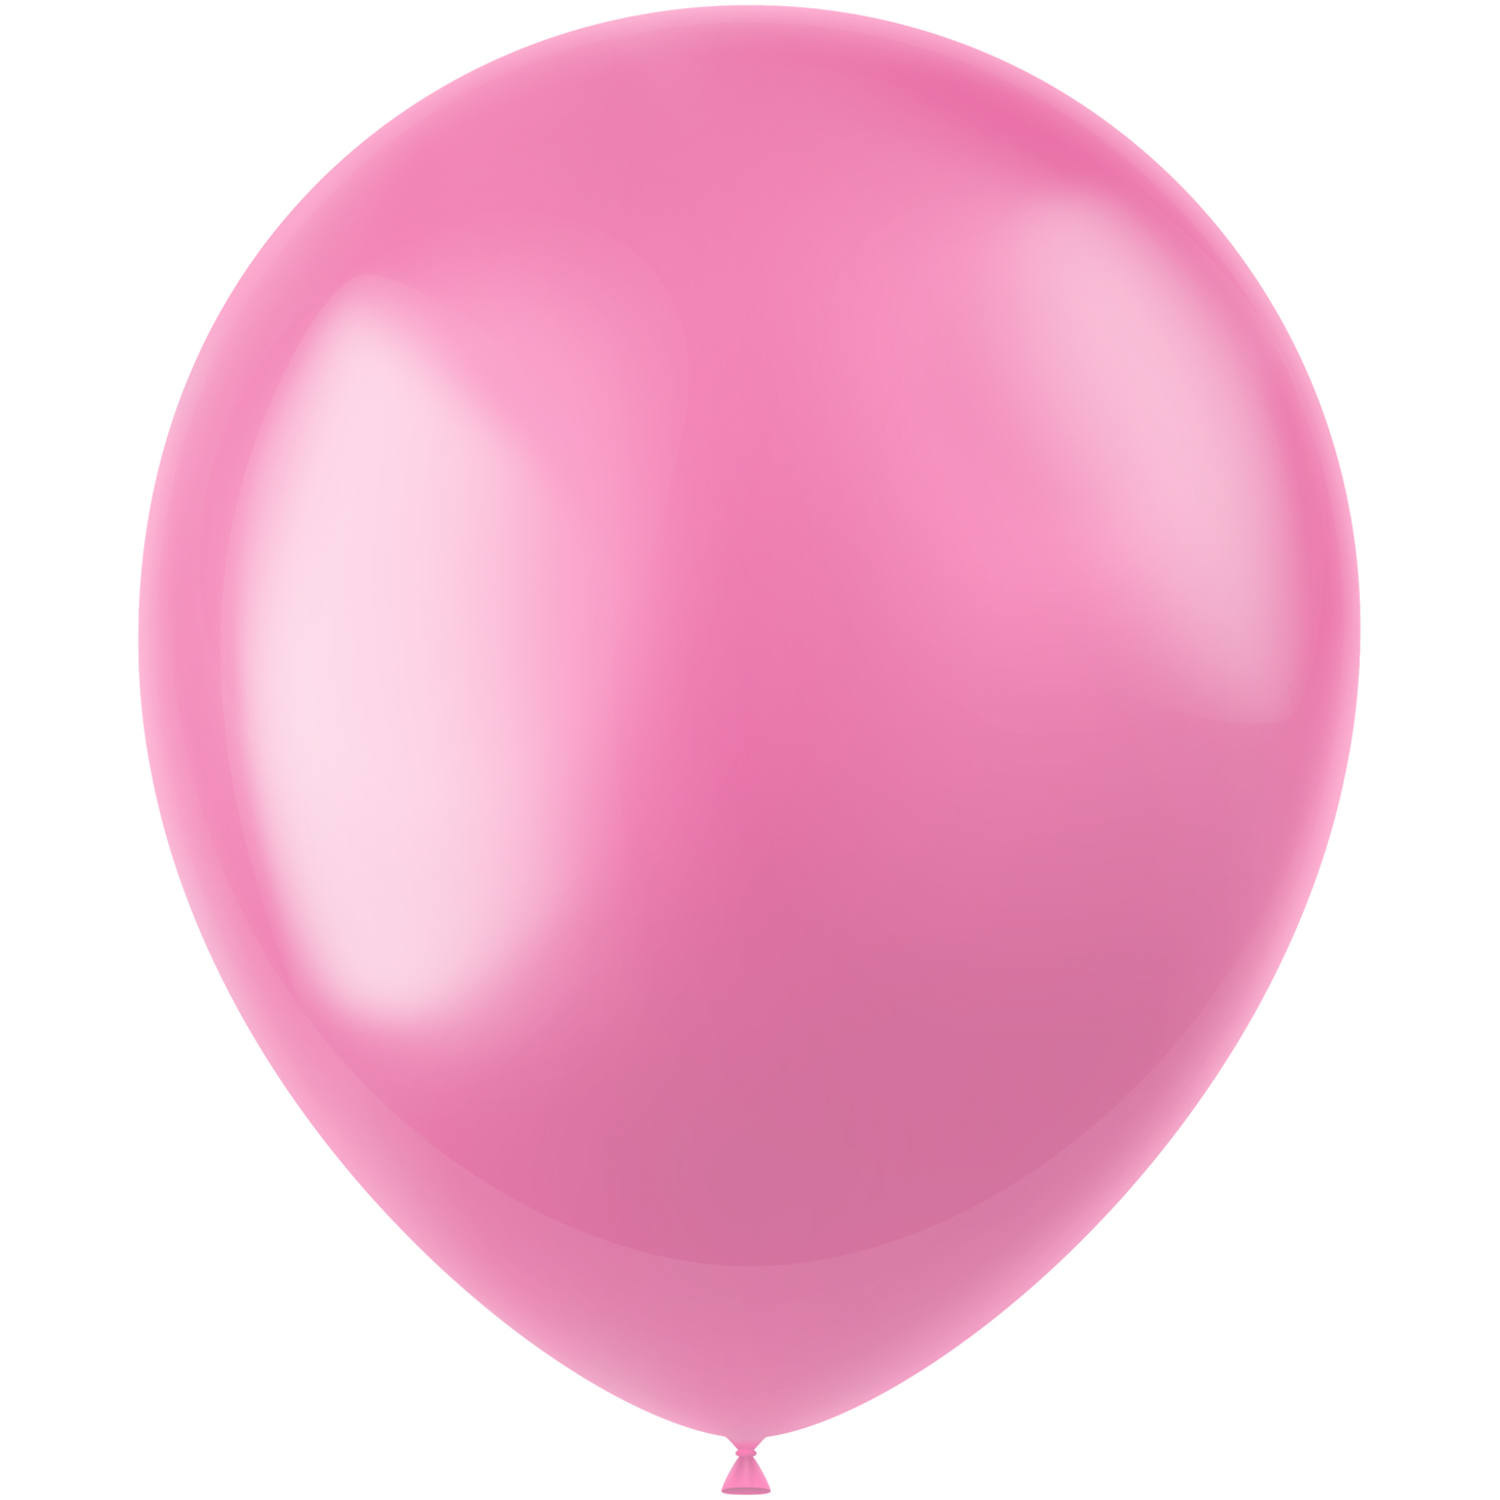 Hoofdkwartier Ondeugd doe alstublieft niet Roze Ballonnen bestellen - Partywinkel